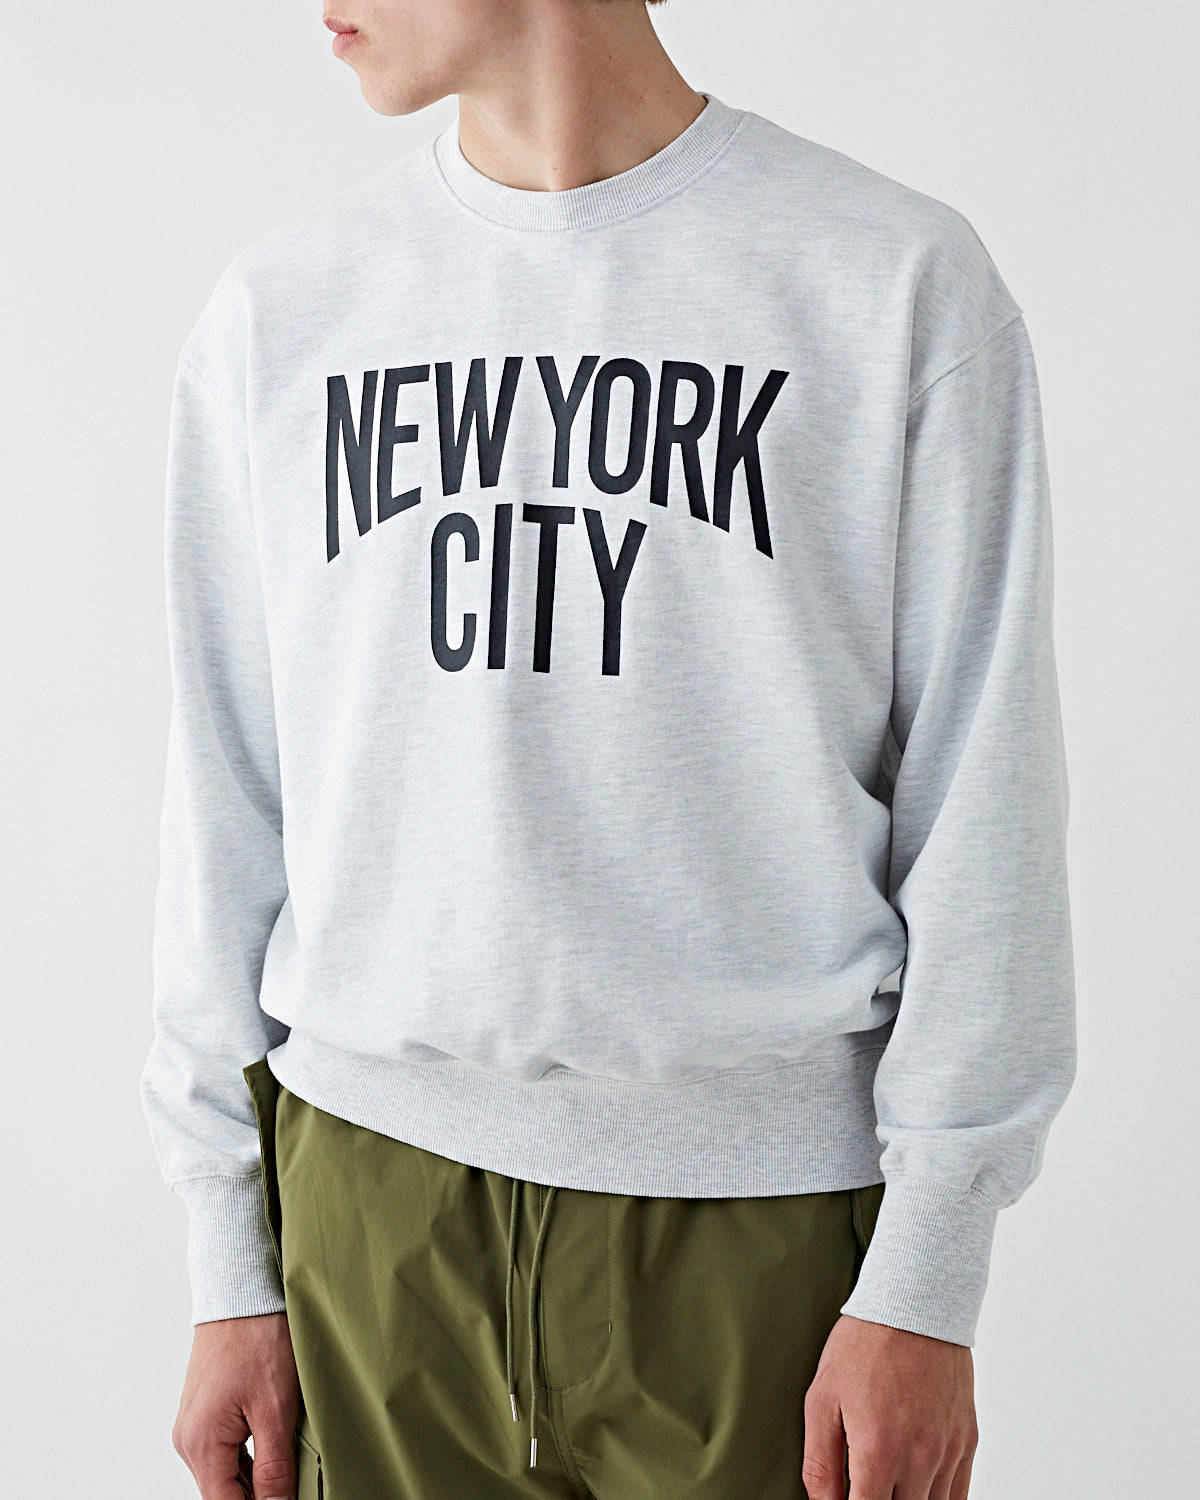 Uniform Bridge NY City Sweatshirt Washed 1% Melange Sweater Men